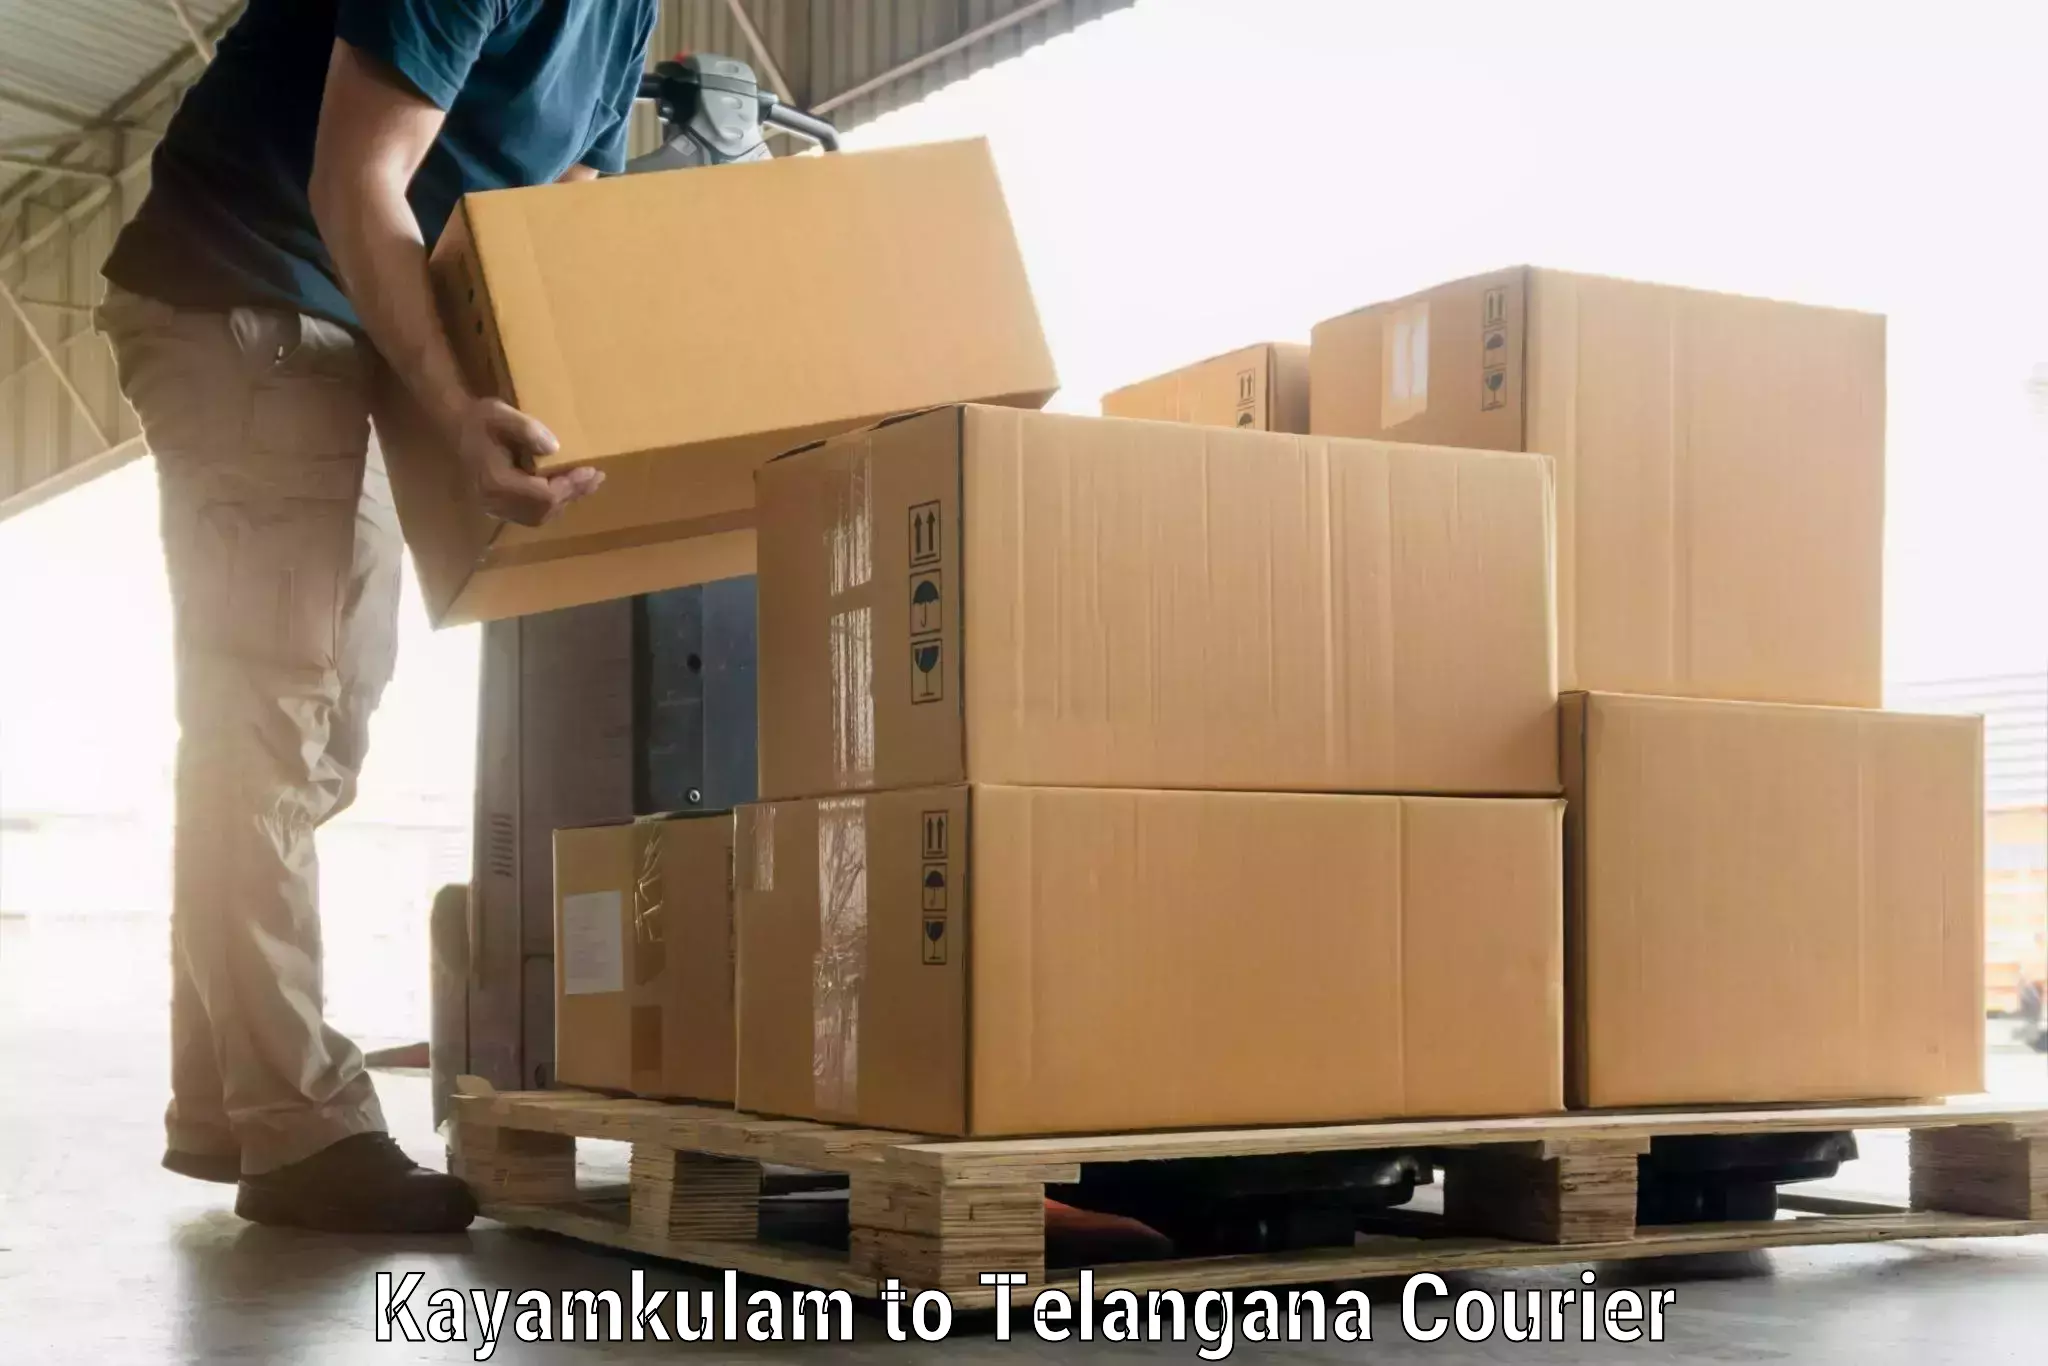 Hassle-free luggage shipping Kayamkulam to Trimulgherry